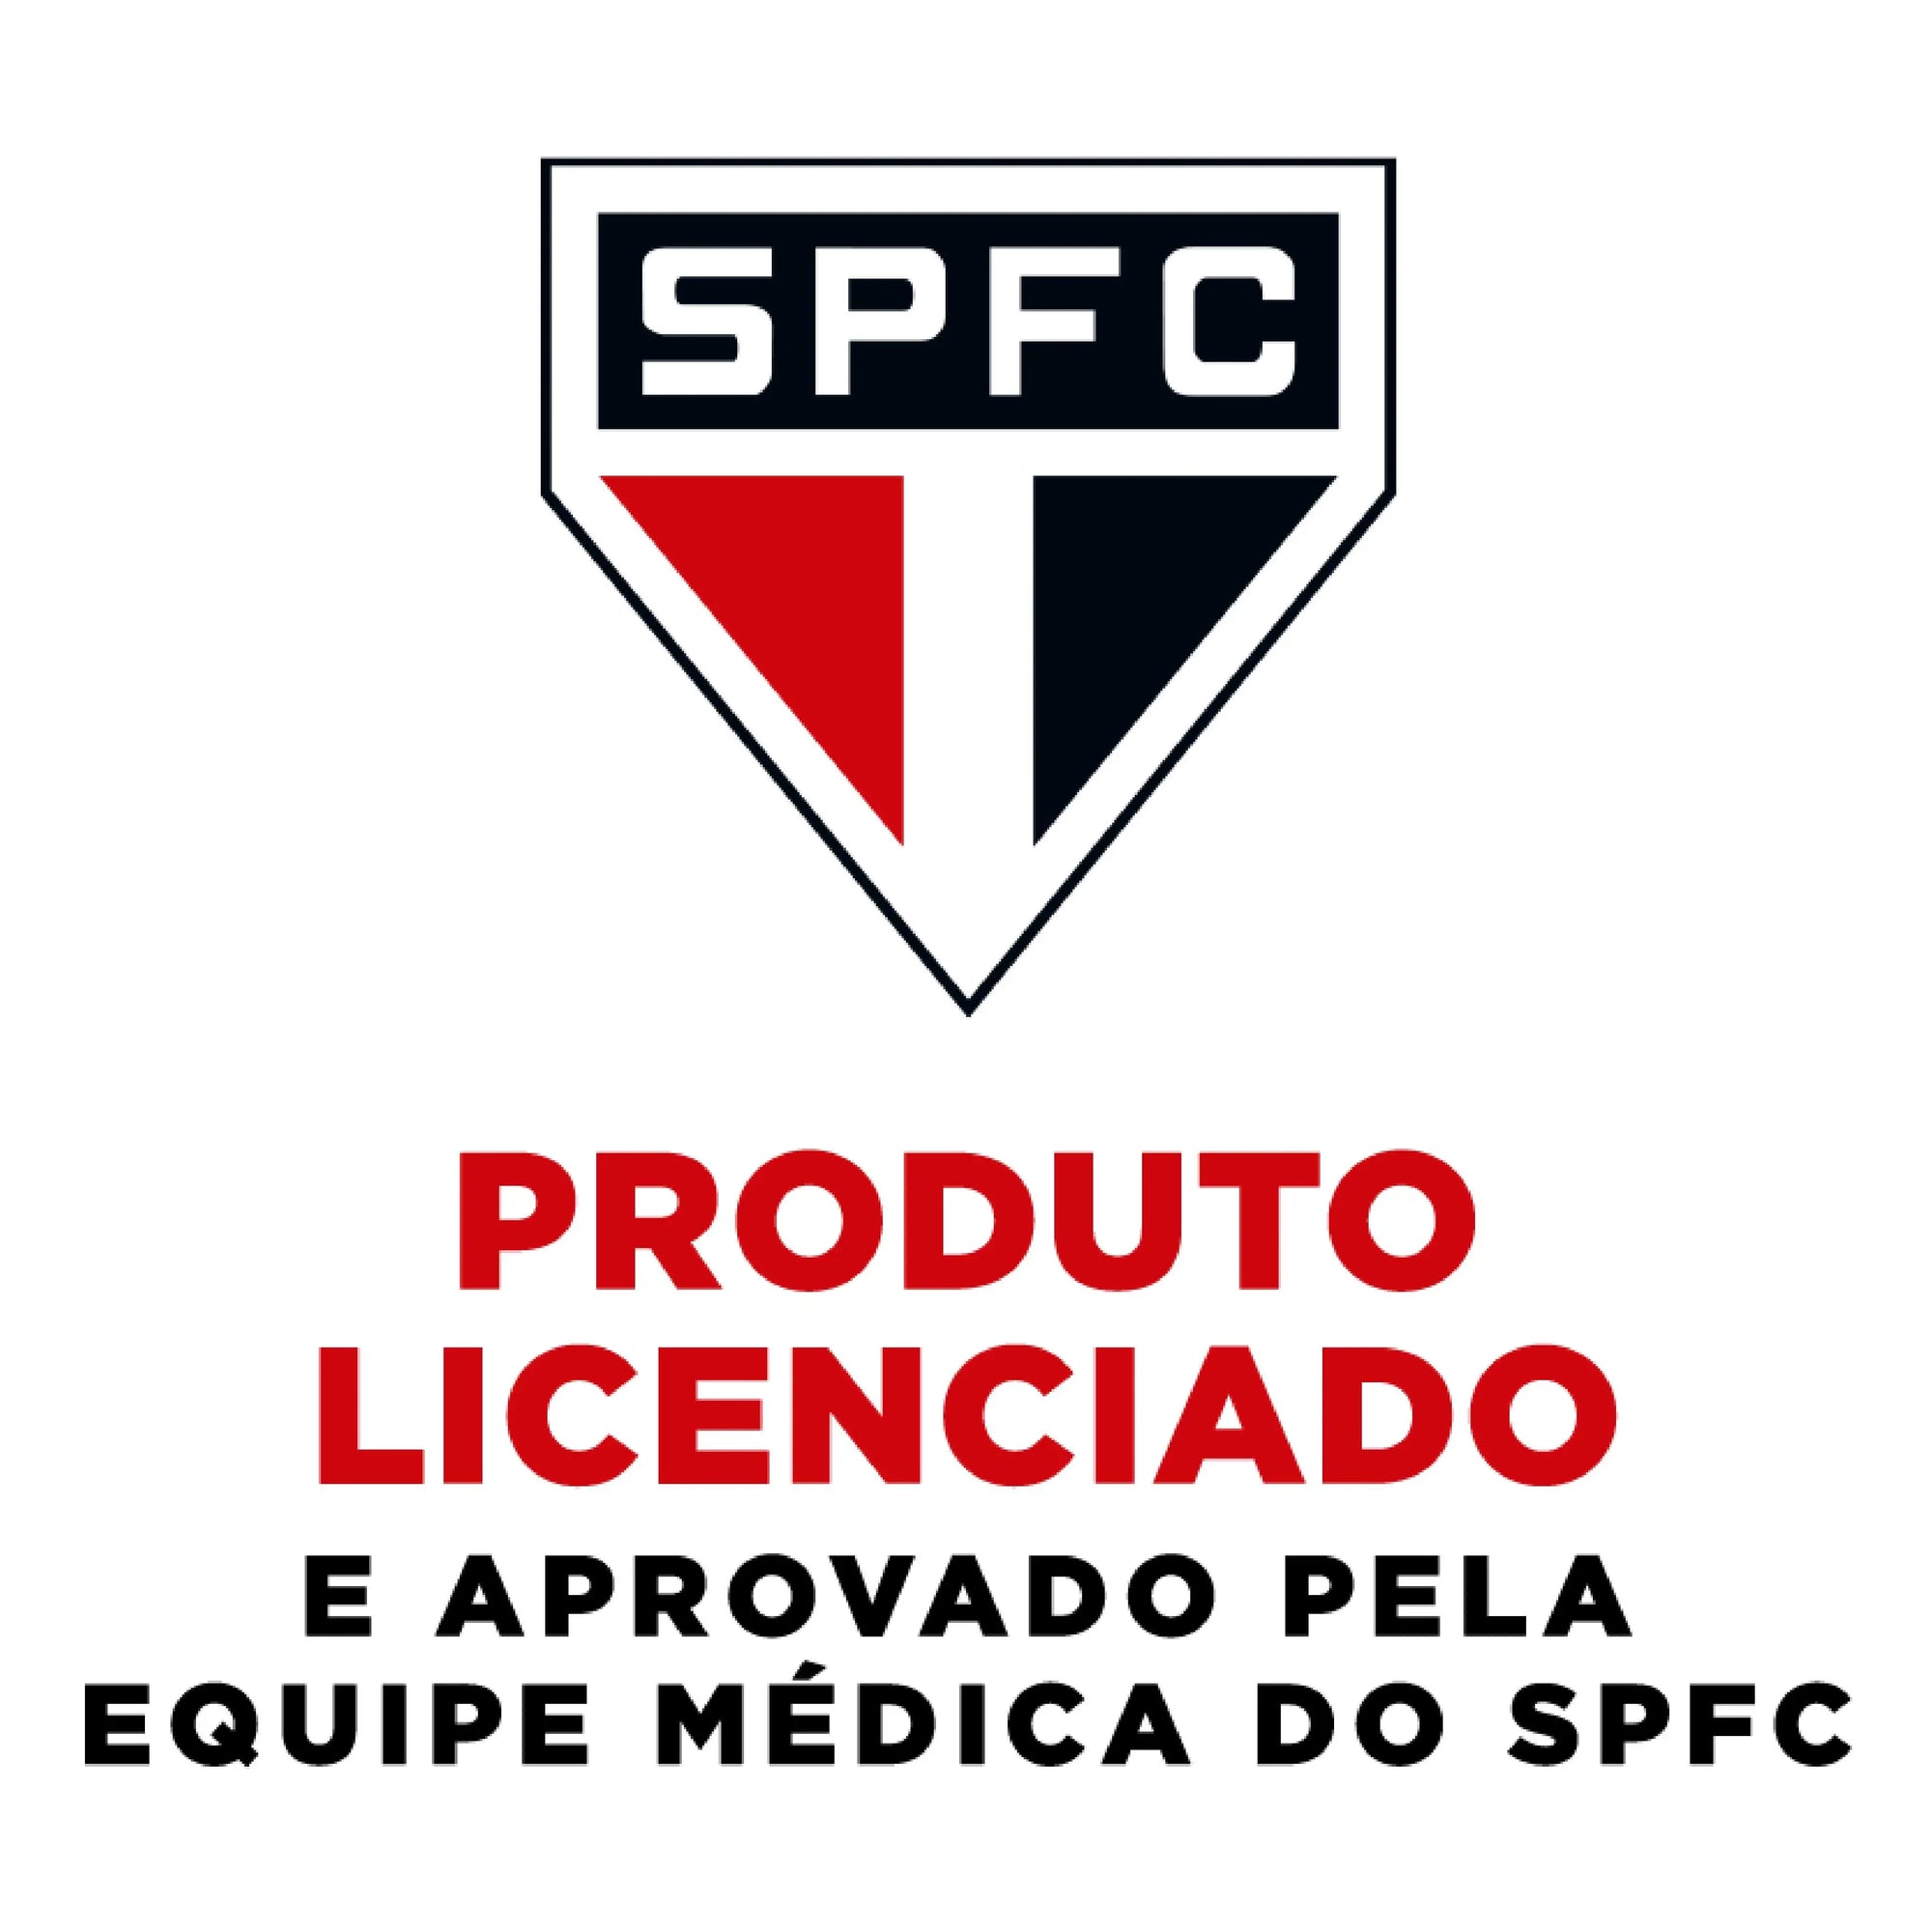 Alignmed® Brasil e São Paulo fecham parceria